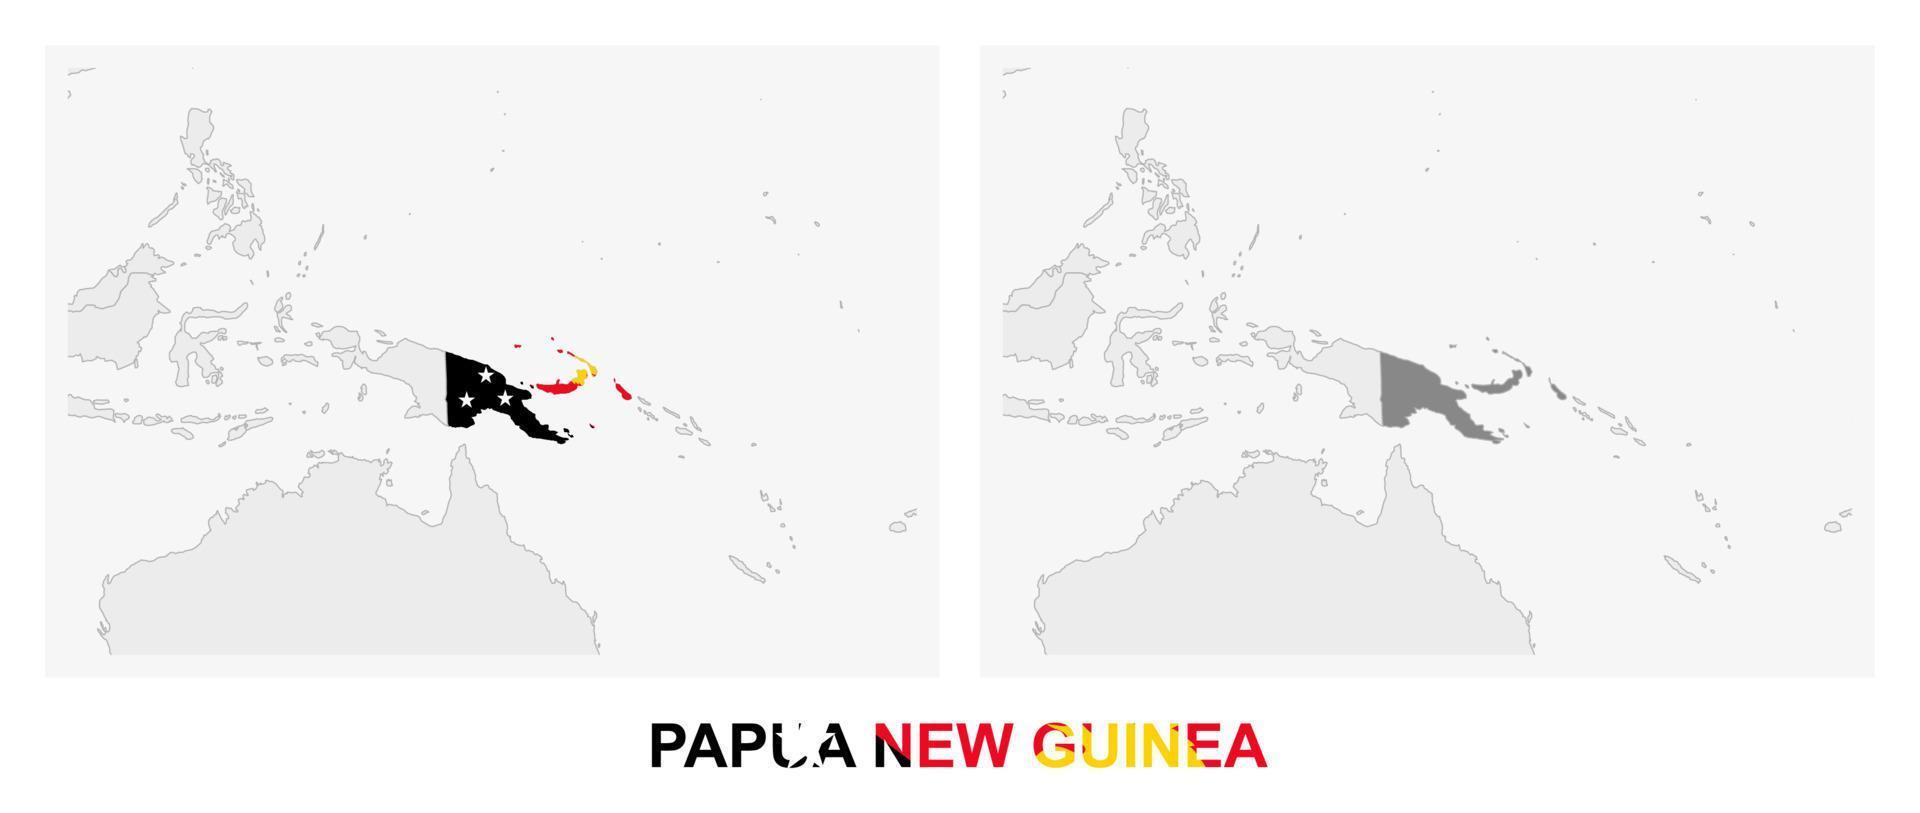 zwei versionen der karte von papua-neuguinea, mit der flagge von papua-neuguinea und dunkelgrau hervorgehoben. vektor